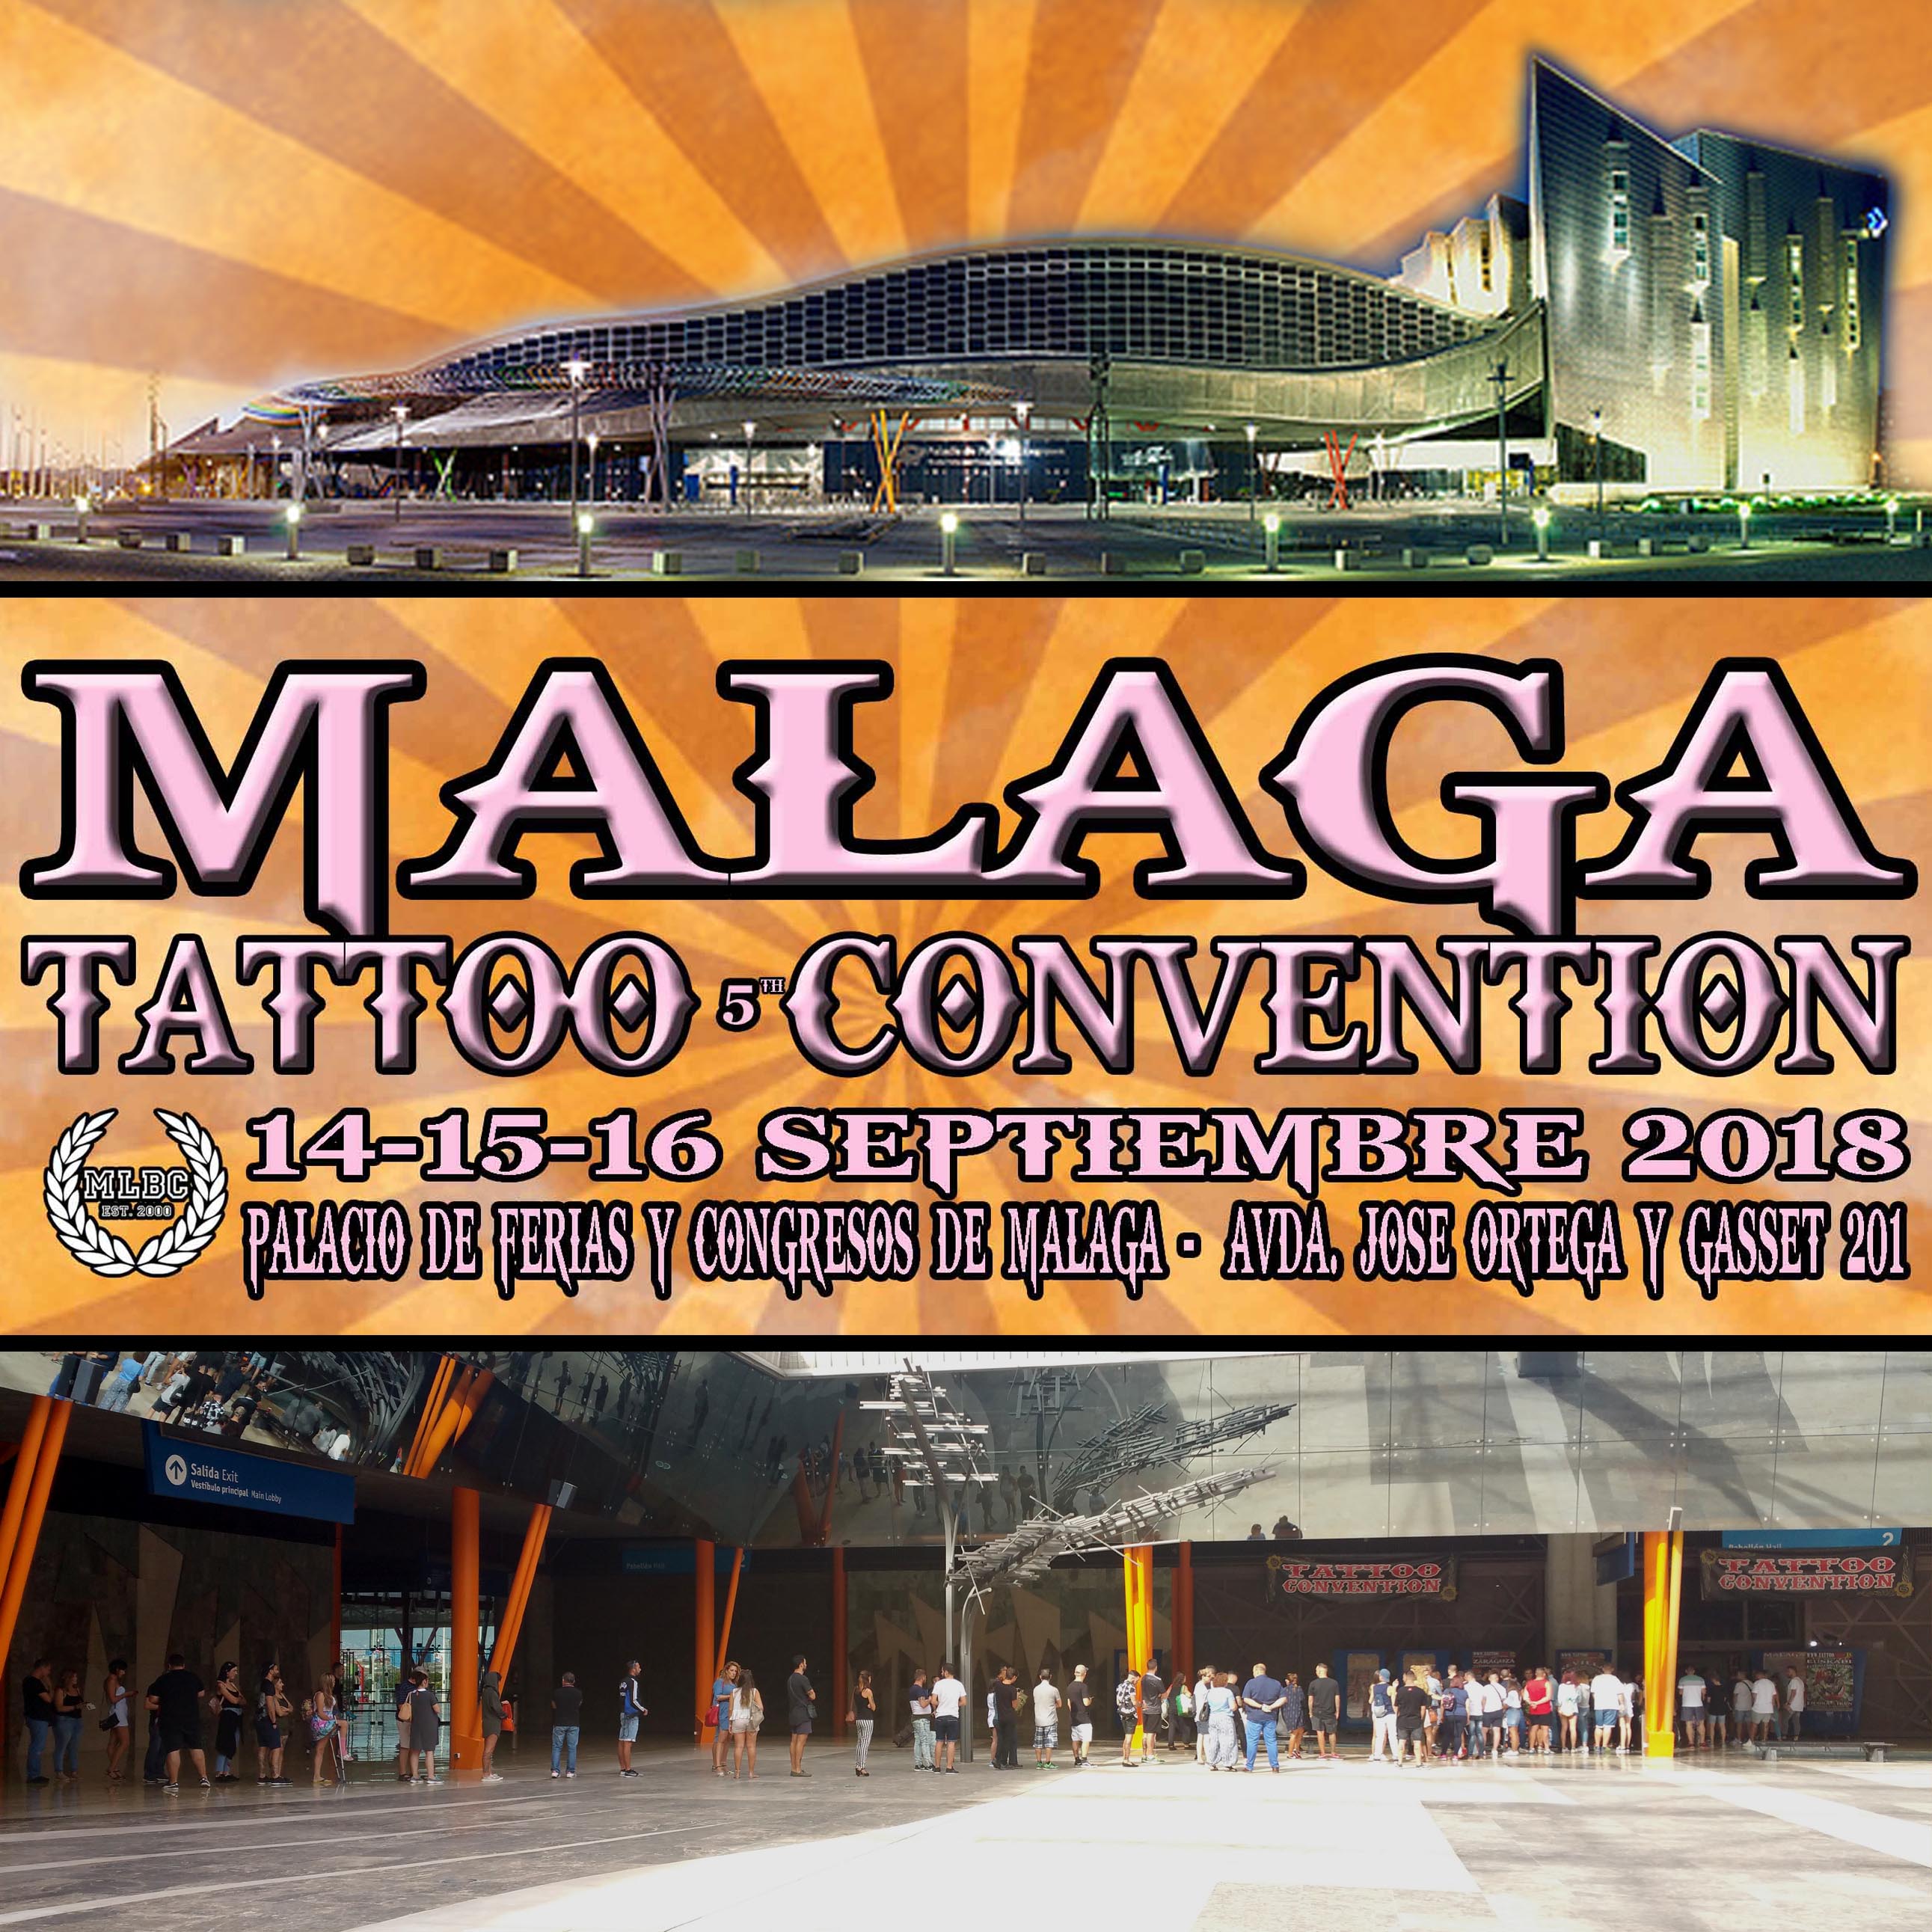 La ‘5ª Málaga Tattoo Convention’ se celebrará el 14-15-16 Septiembre 2018